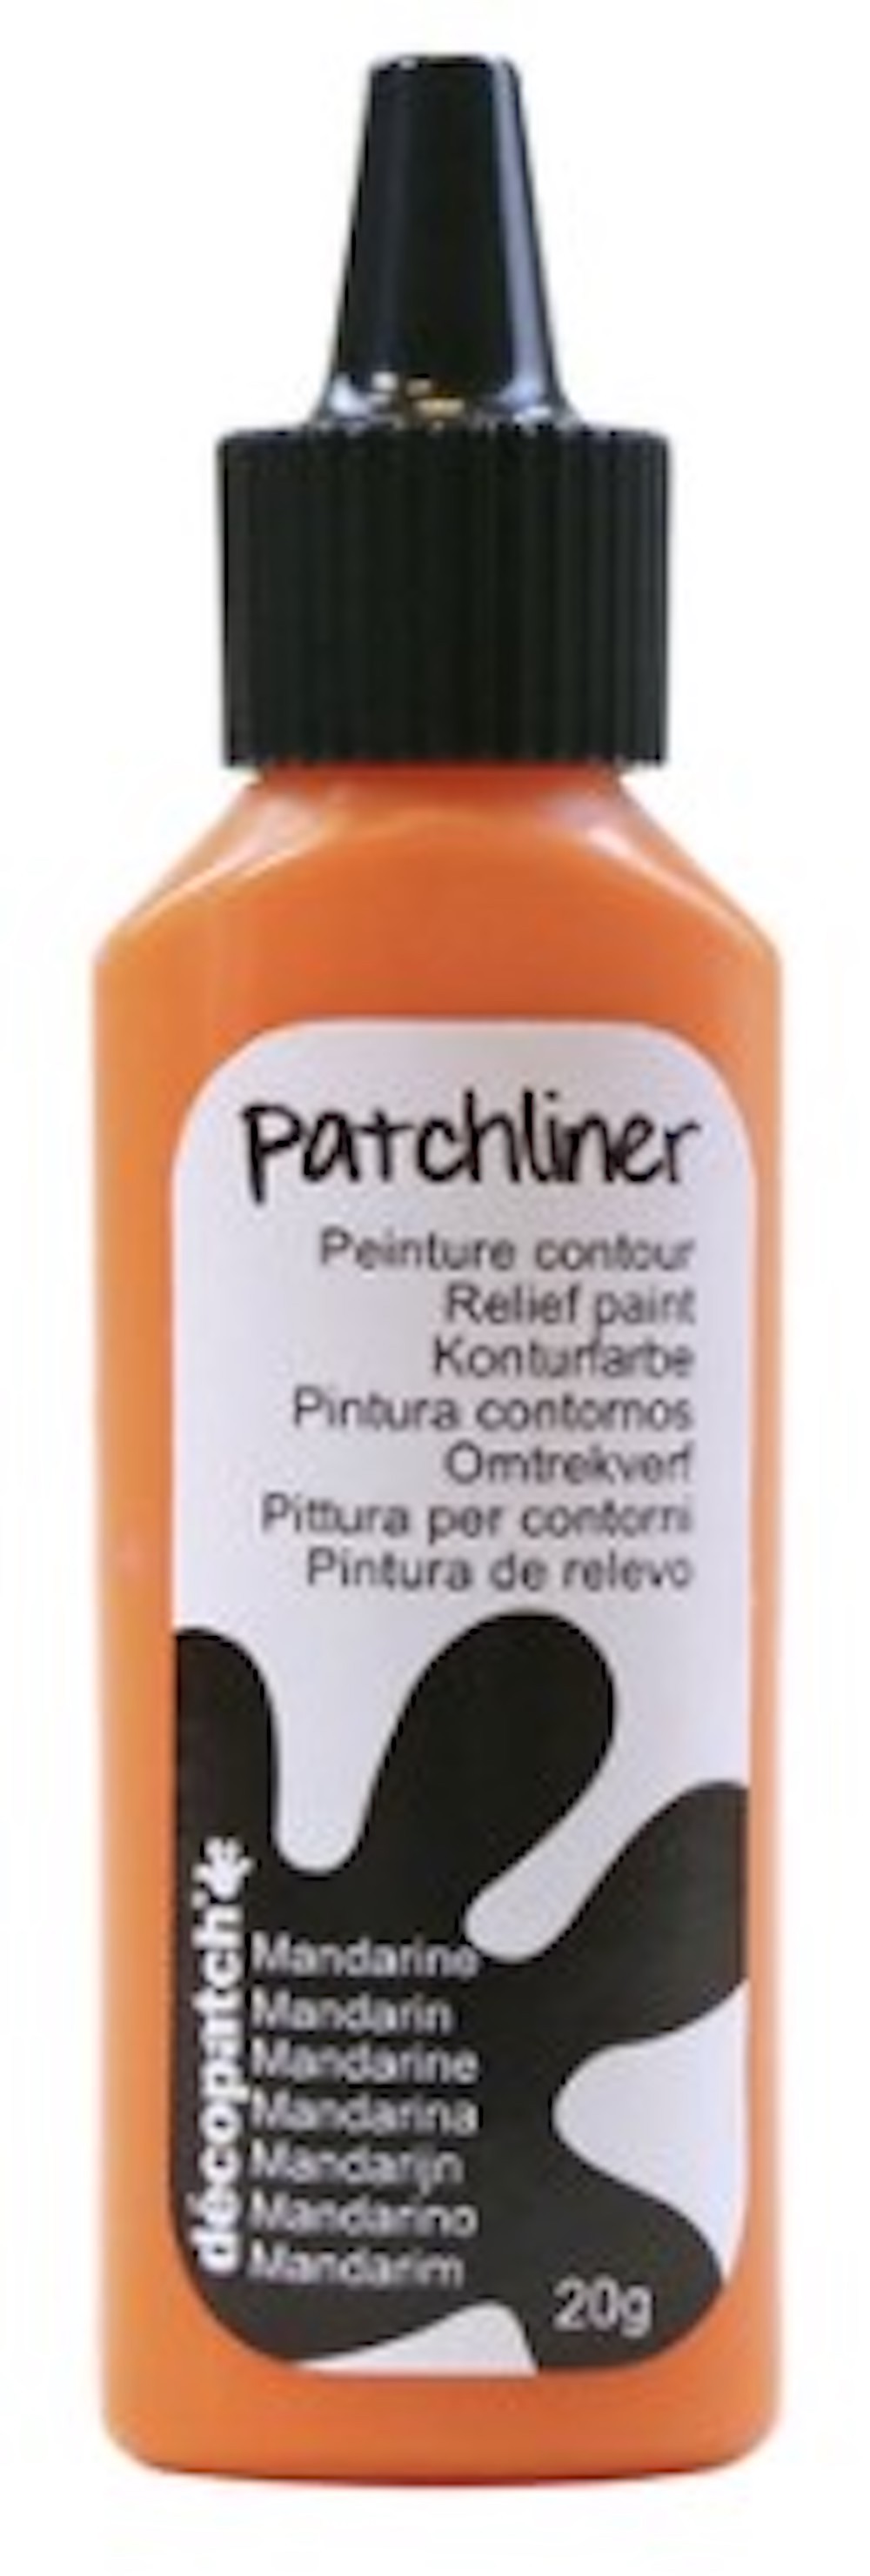 Décopatch Patchliner 20g  -verschiedene Farben-